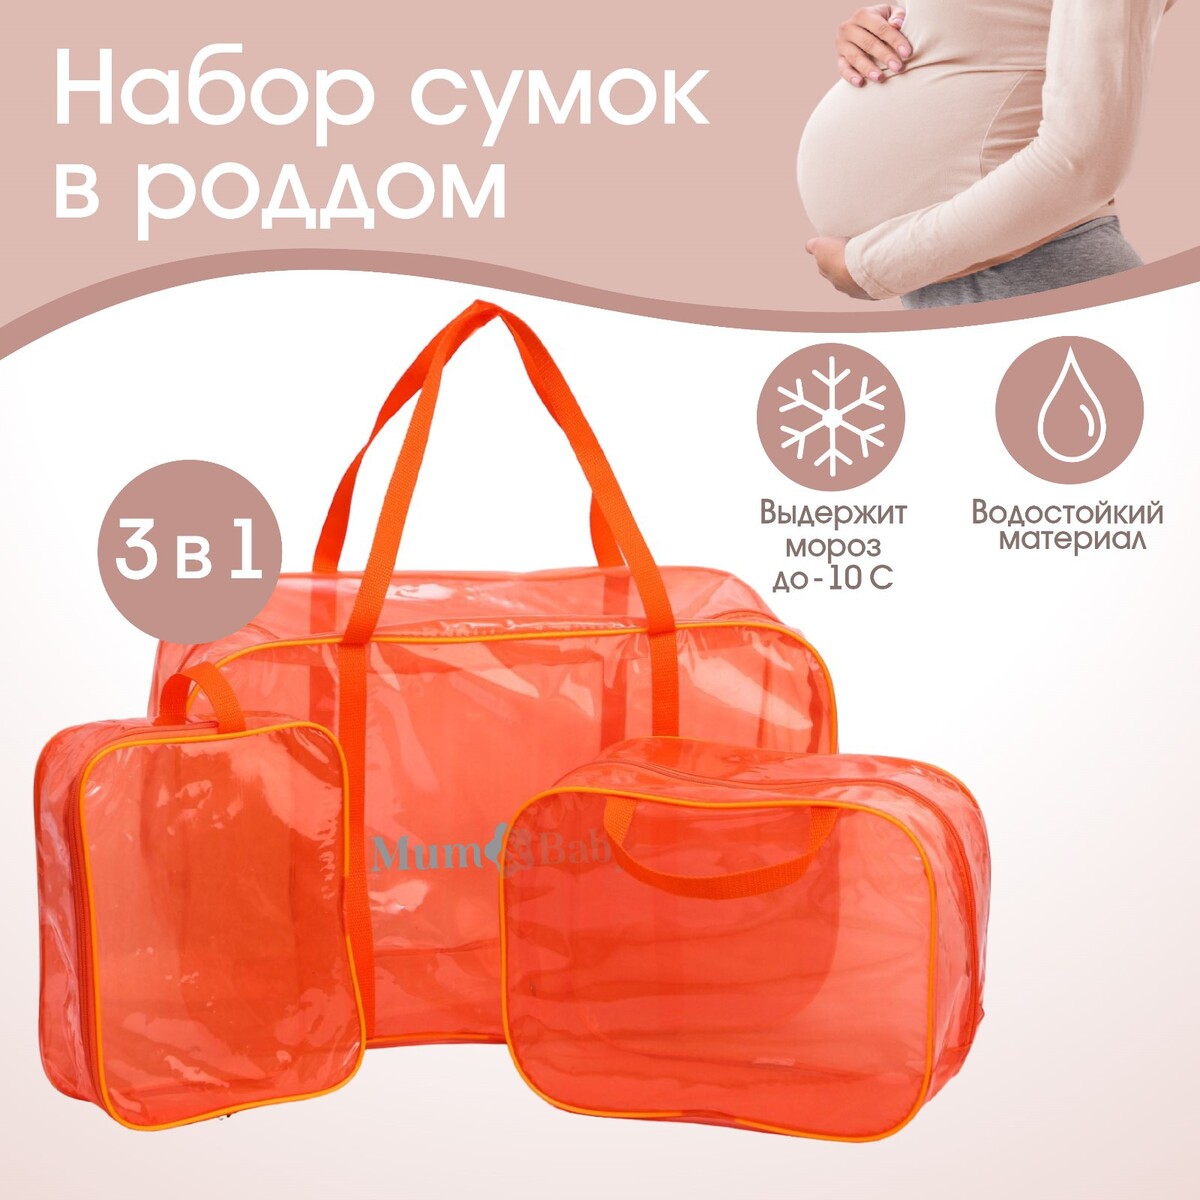 Набор сумок в роддом, 3 шт., цветной пвх, цвет оранжевый Mum&Baby